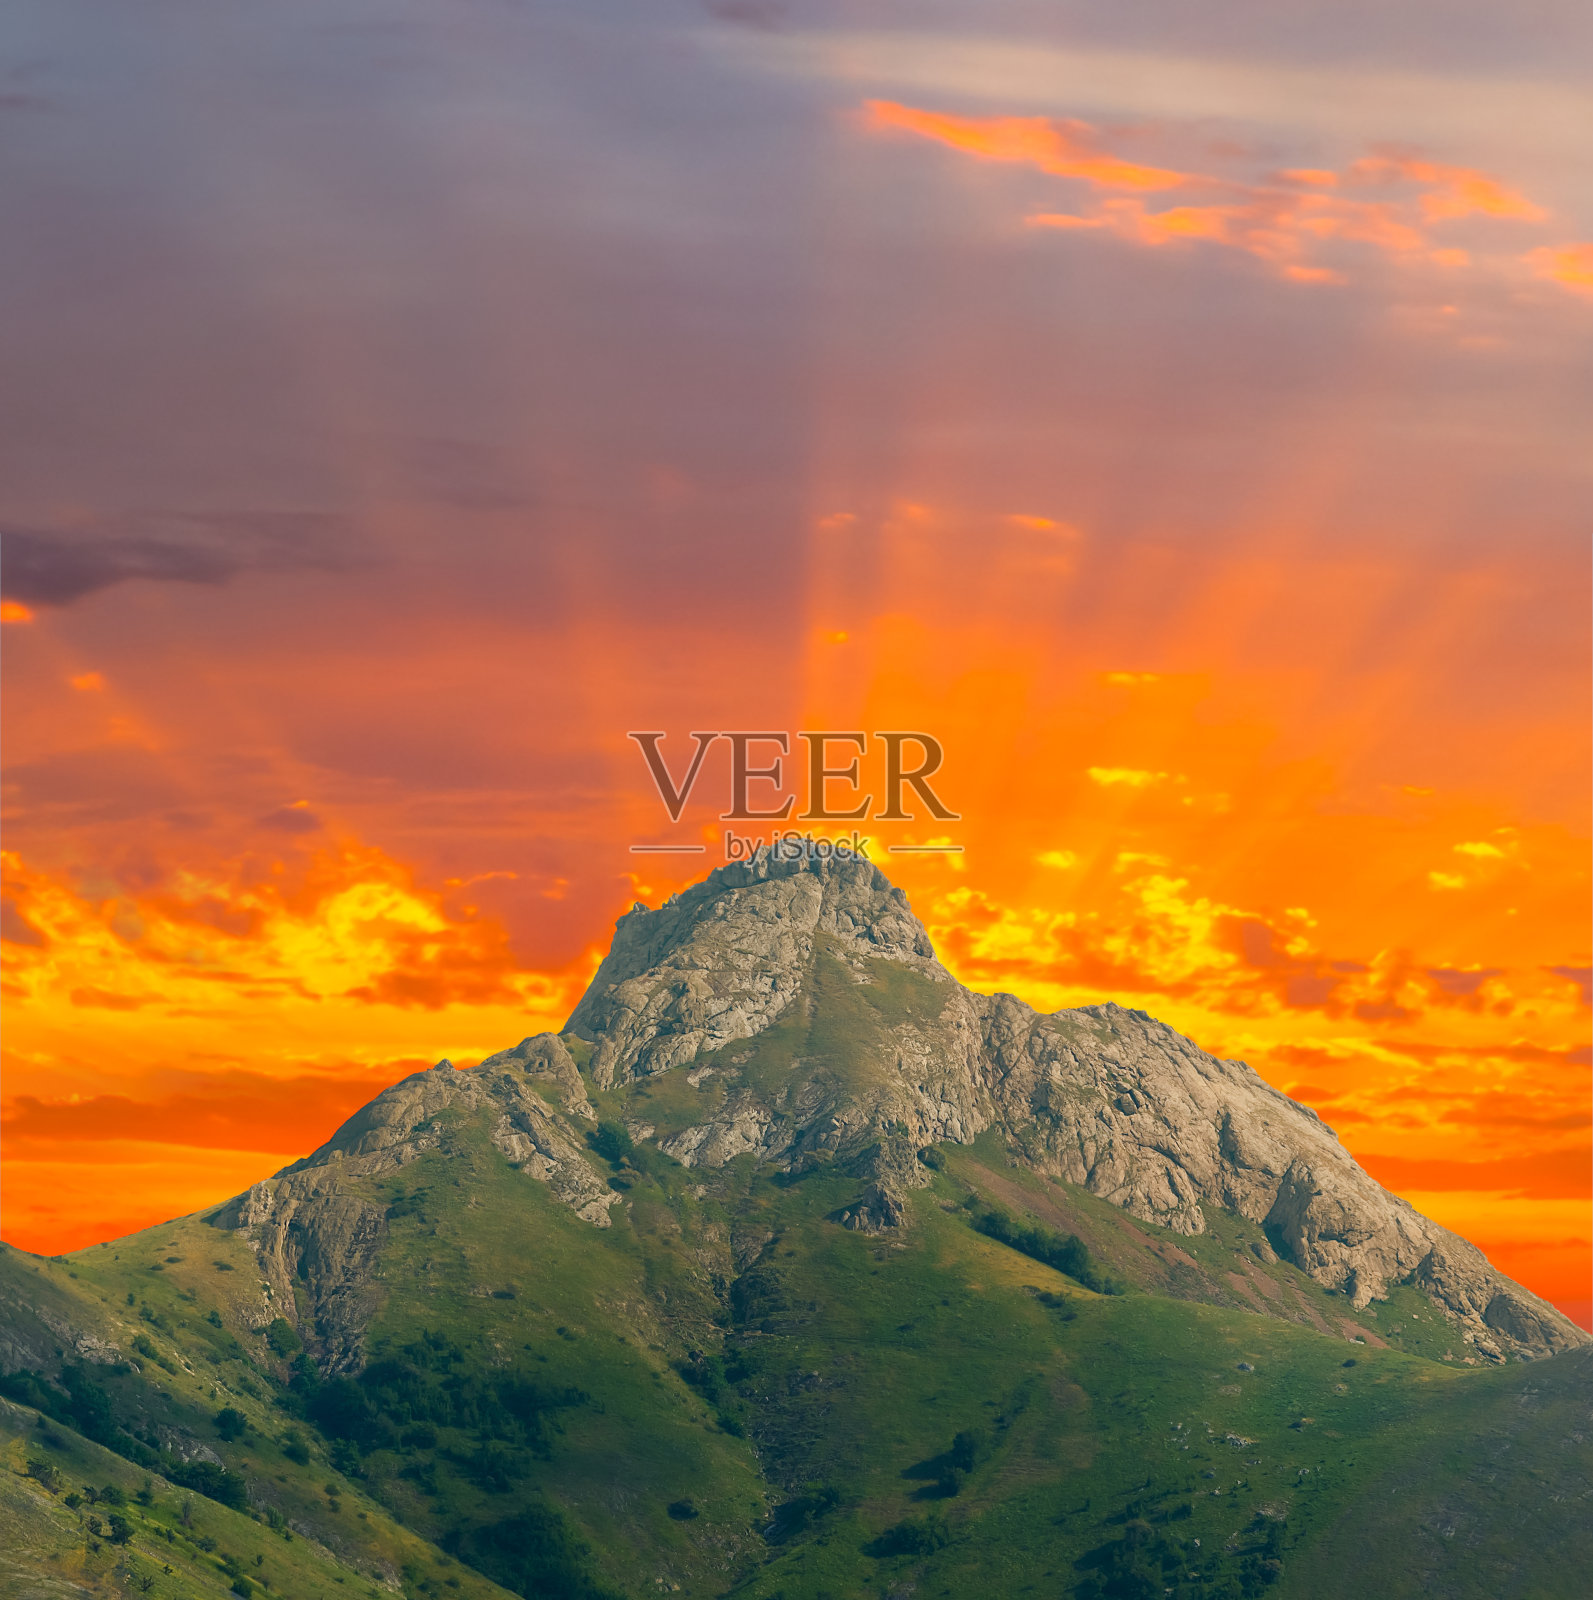 独自登上山顶在红色的戏剧性的日落背景照片摄影图片